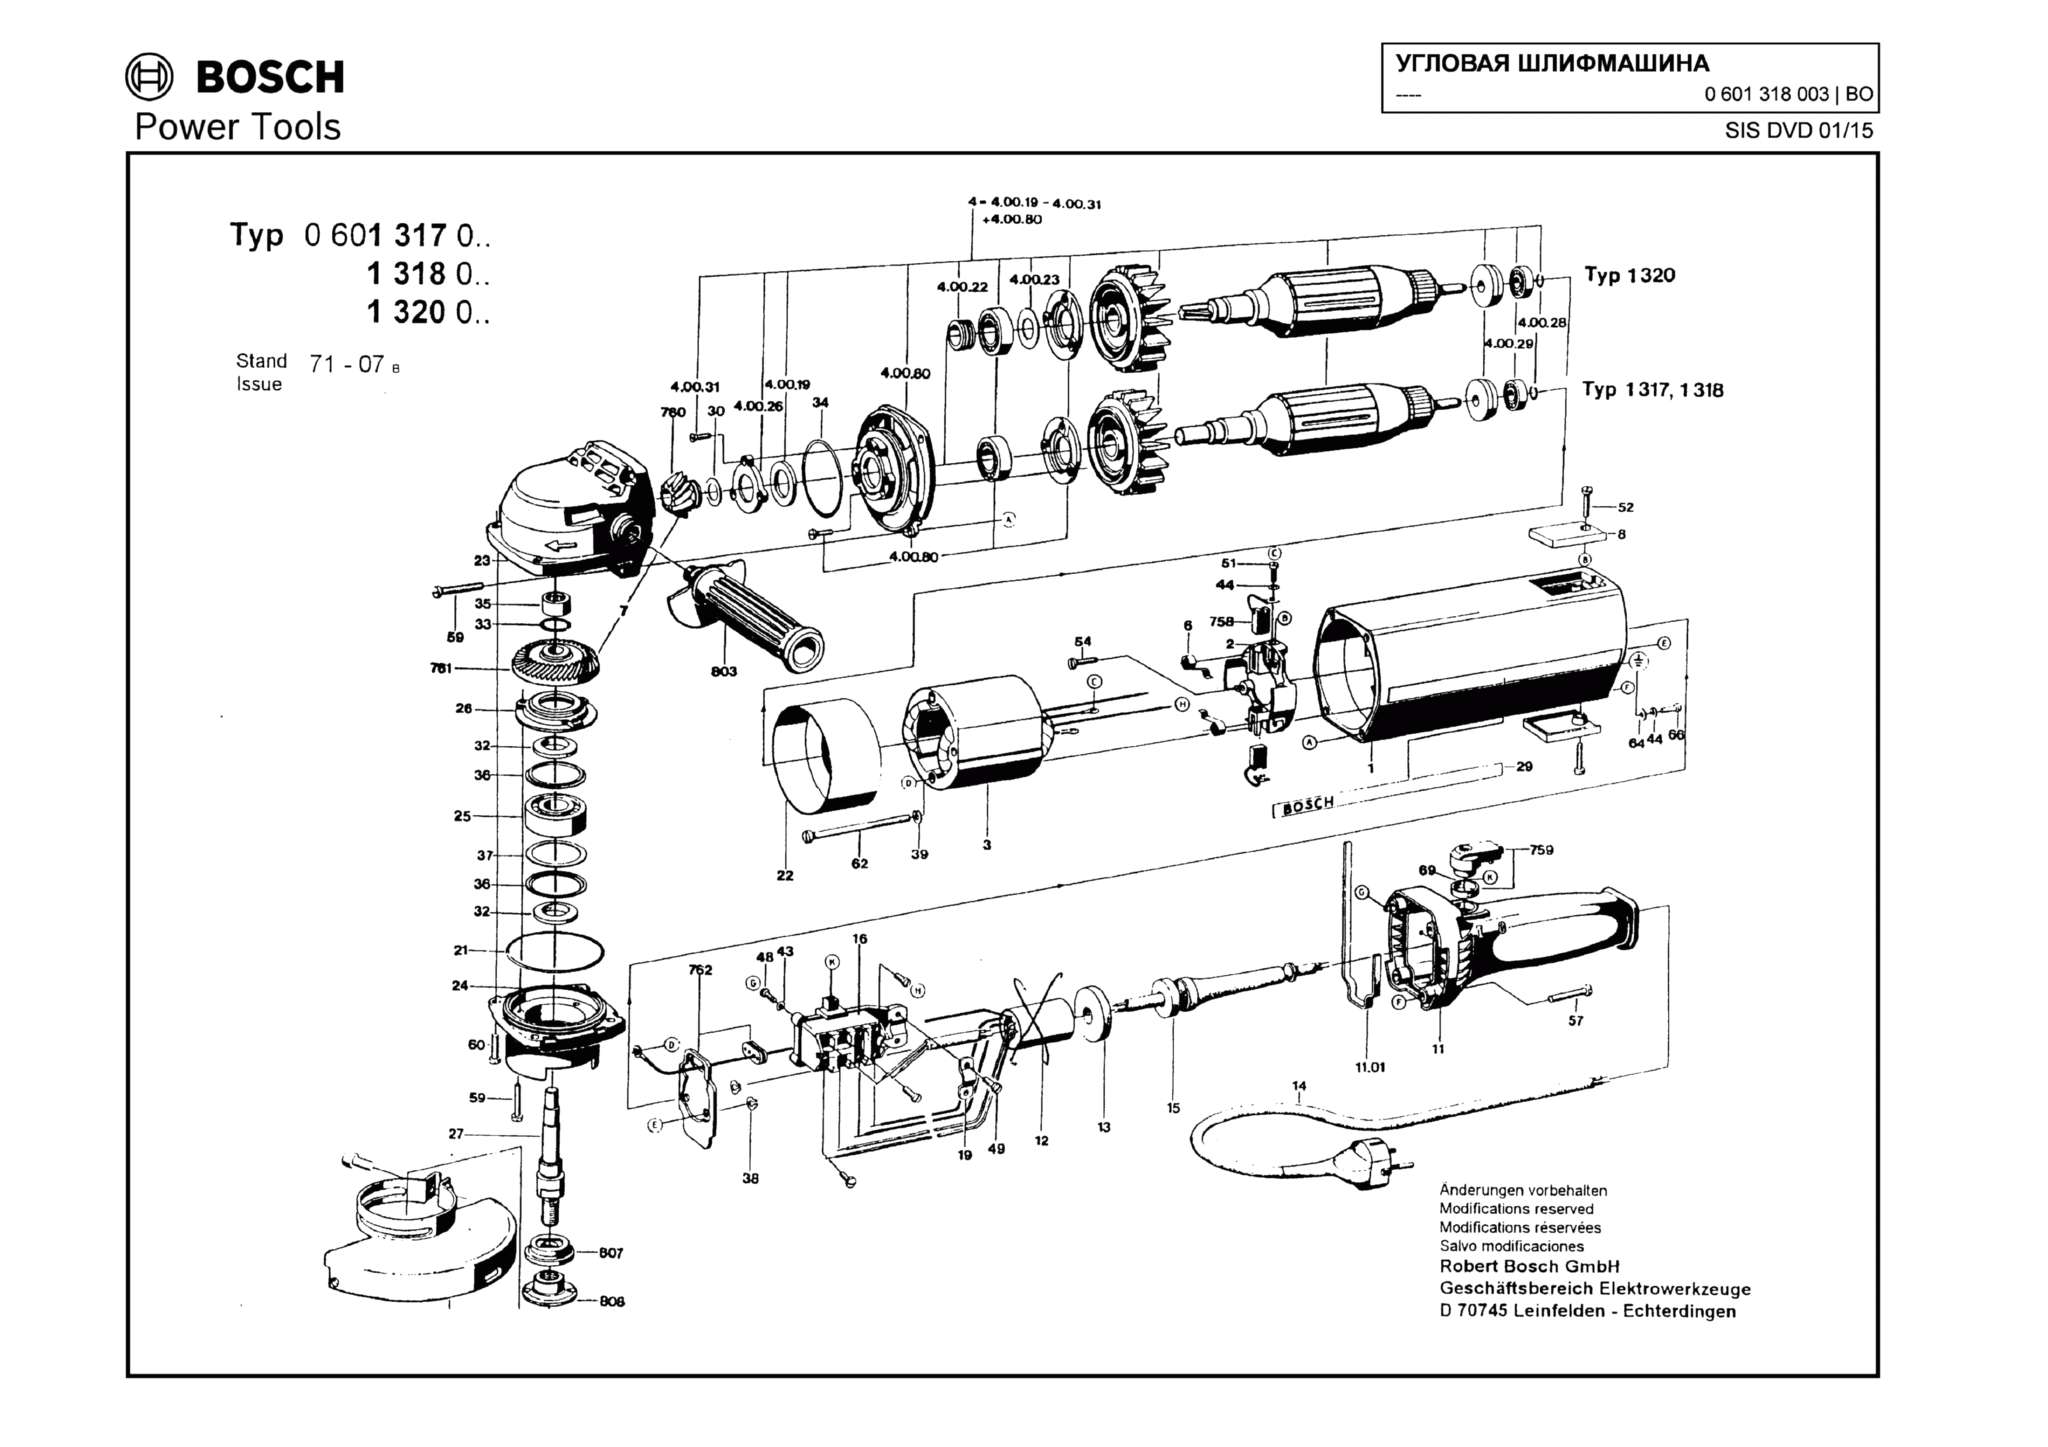 Запчасти, схема и деталировка Bosch (ТИП 0601318003)